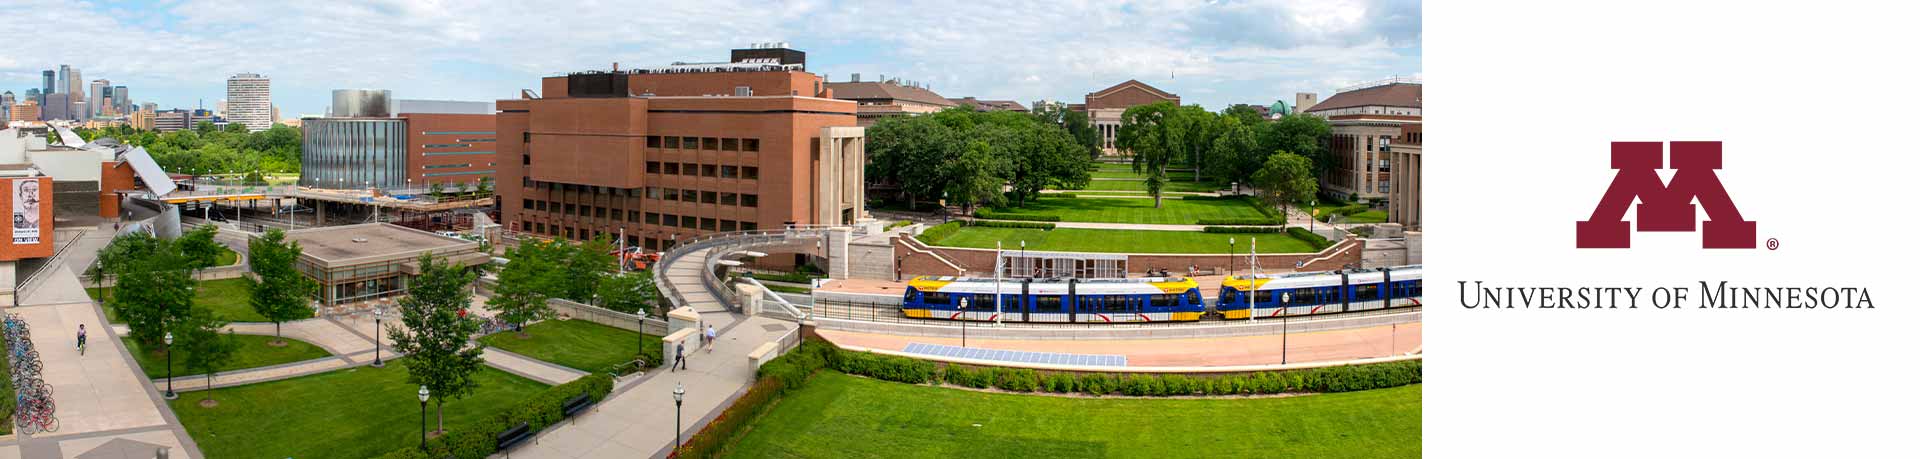 دانشگاه ایالتی جنوب غربی مینه سوتا  (بهترین دانشگاه ارزان آمریکا از لحاظ امنیت محوطه)